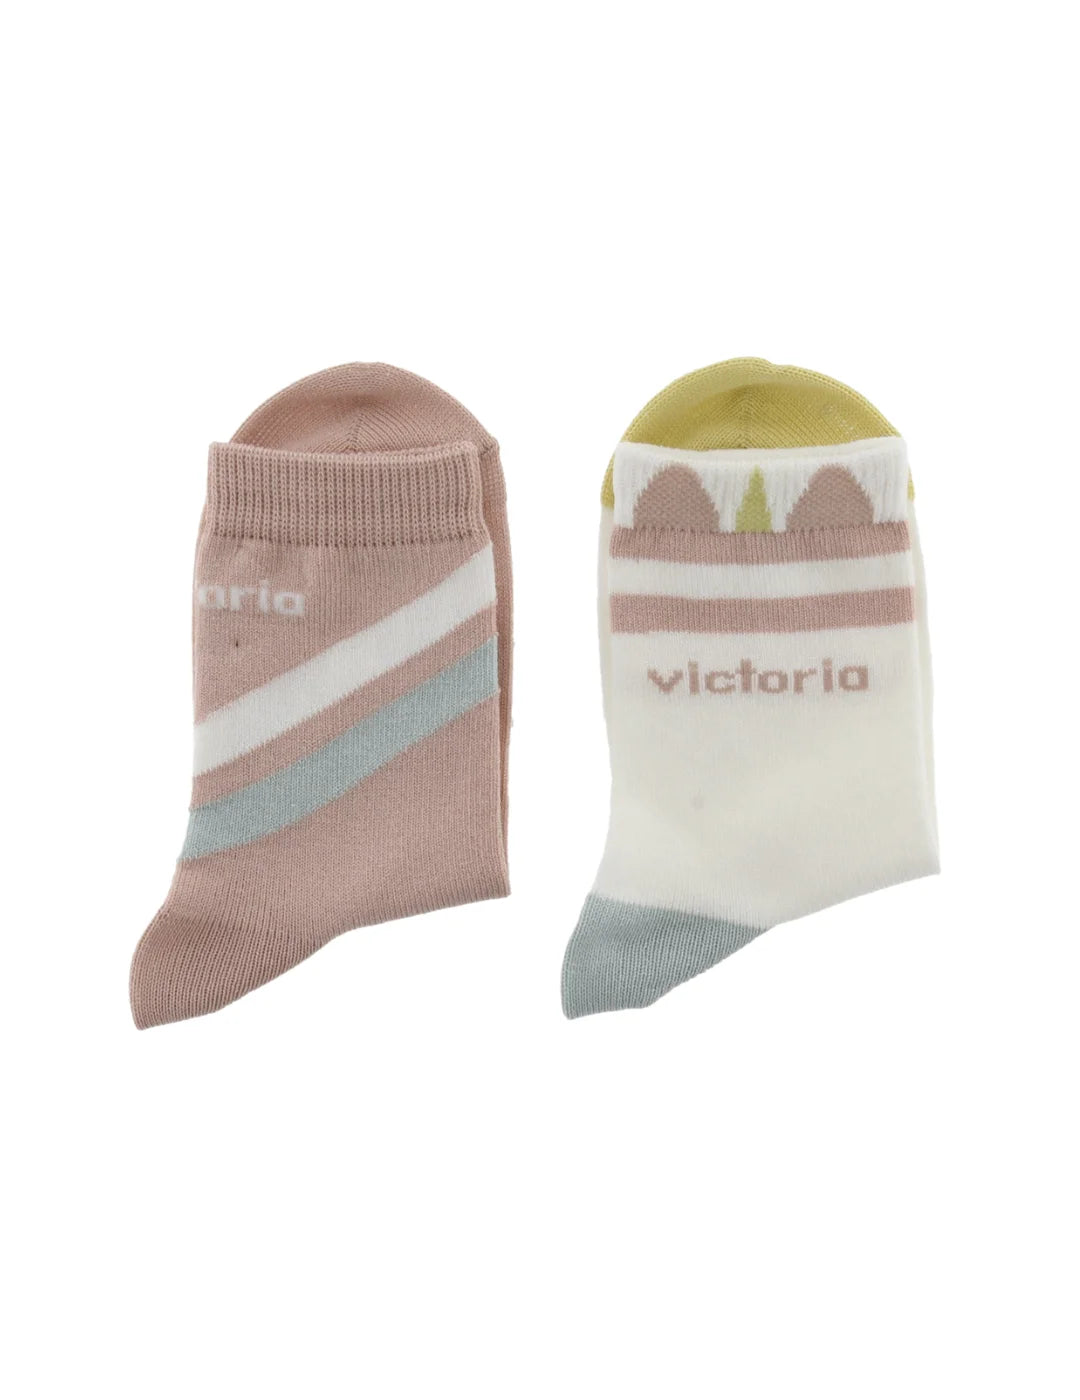 Pack de 2 Calcetines Niña Victoria Rosa | Bicos de Fío